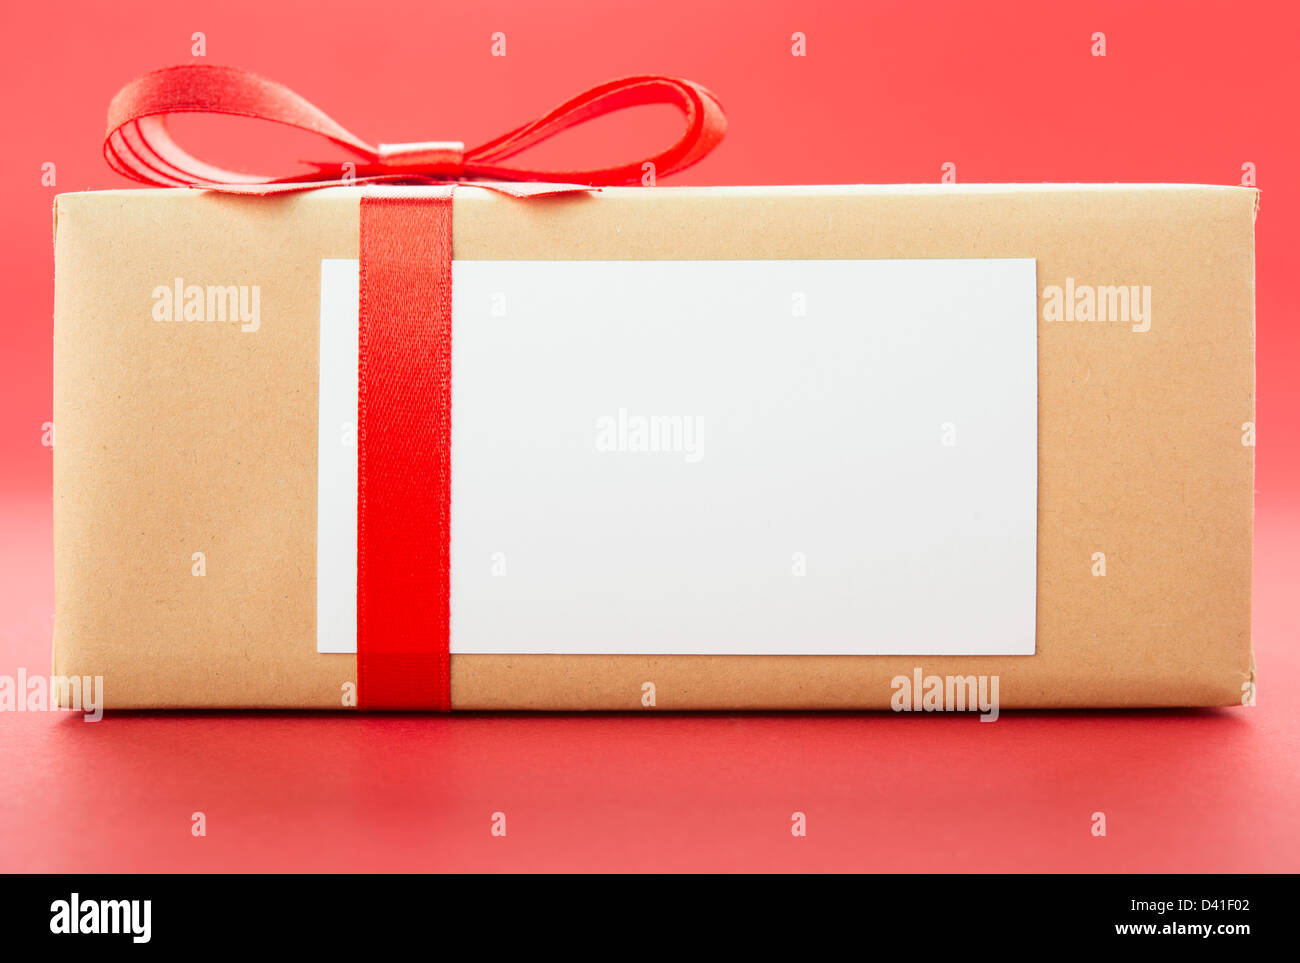 Boîte cadeau enveloppé avec red bow, isolé sur fond rouge Banque D'Images